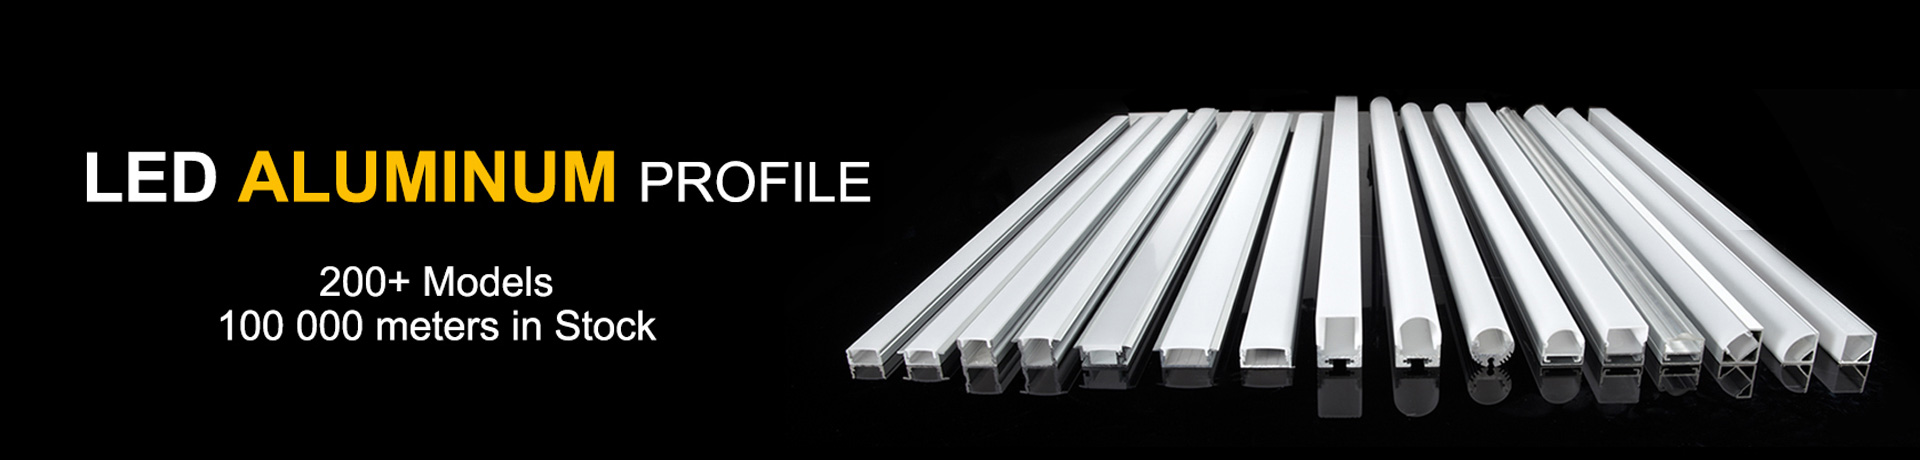 led aluminum profile - Mini LED Aluminum Profile